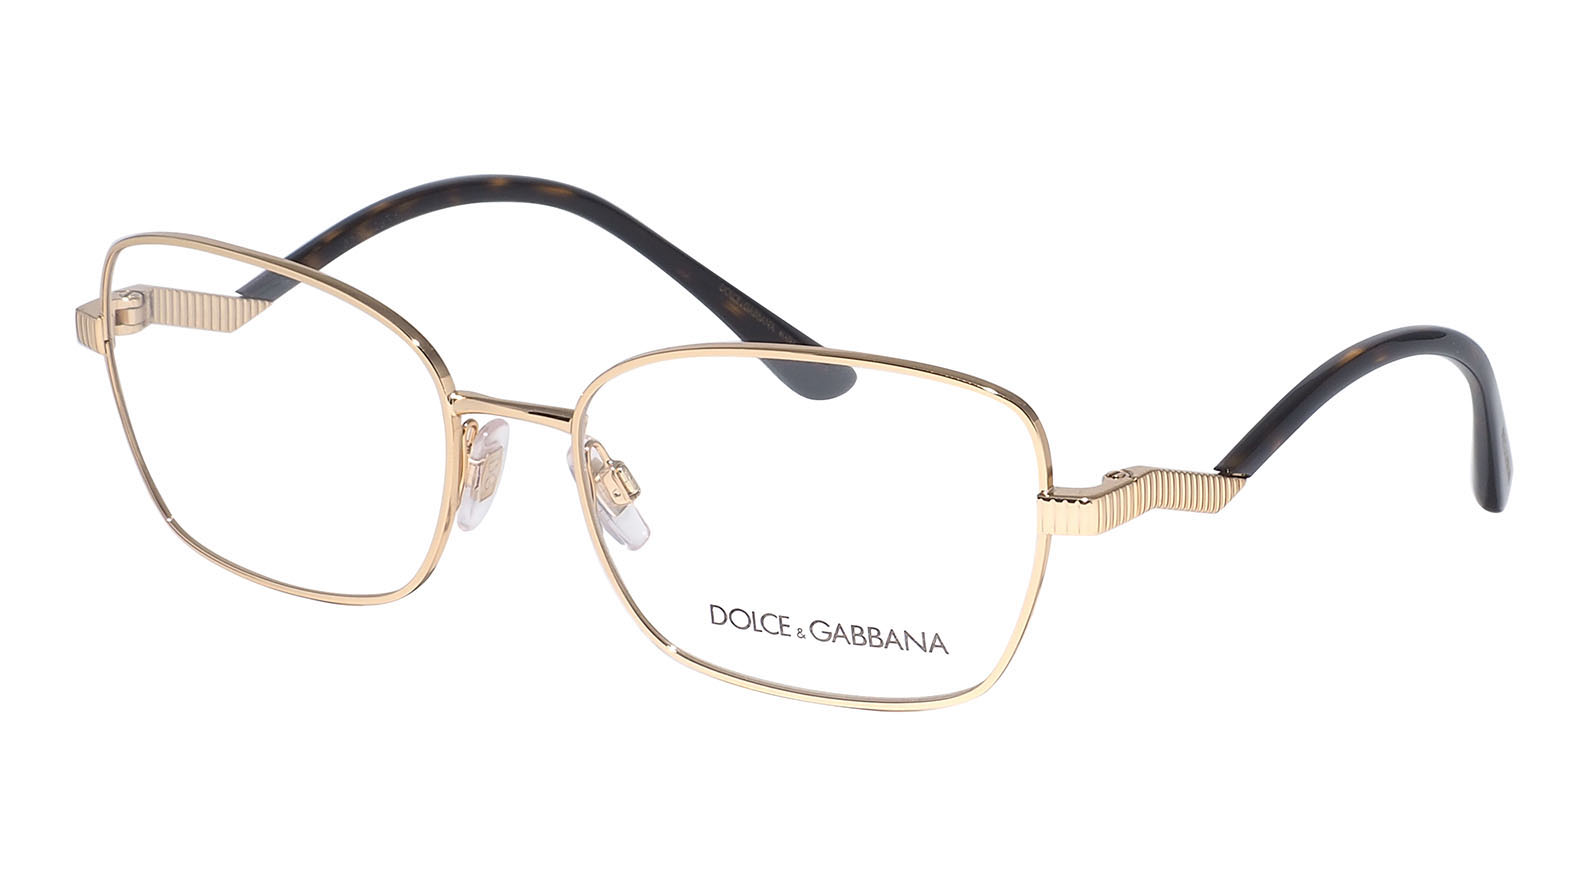 Dolce&Gabbana 1334 02